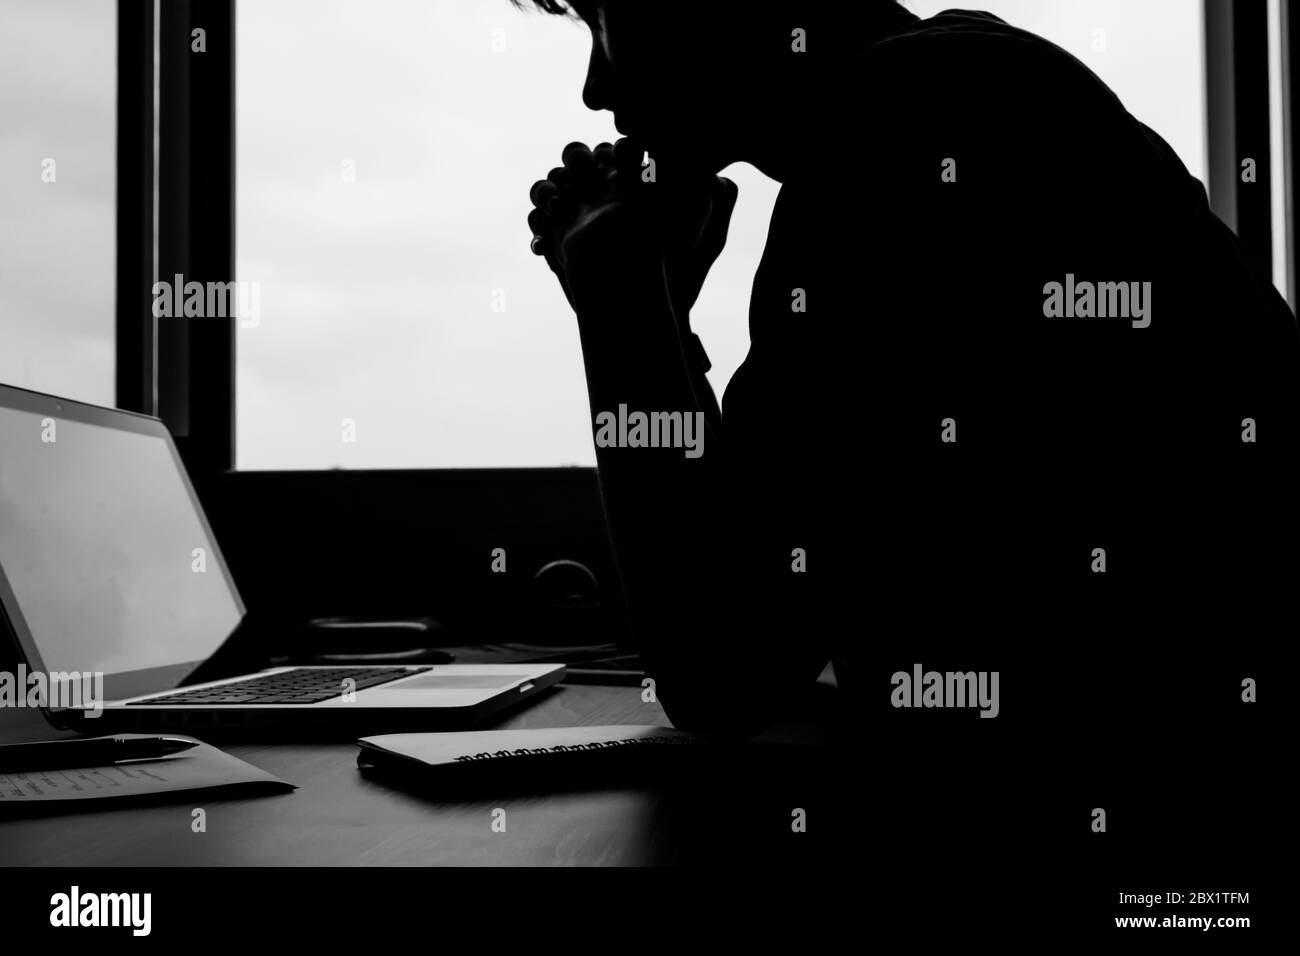 La silhouette d'une image d'un homme regardant son ordinateur portable sur le bureau. Banque D'Images